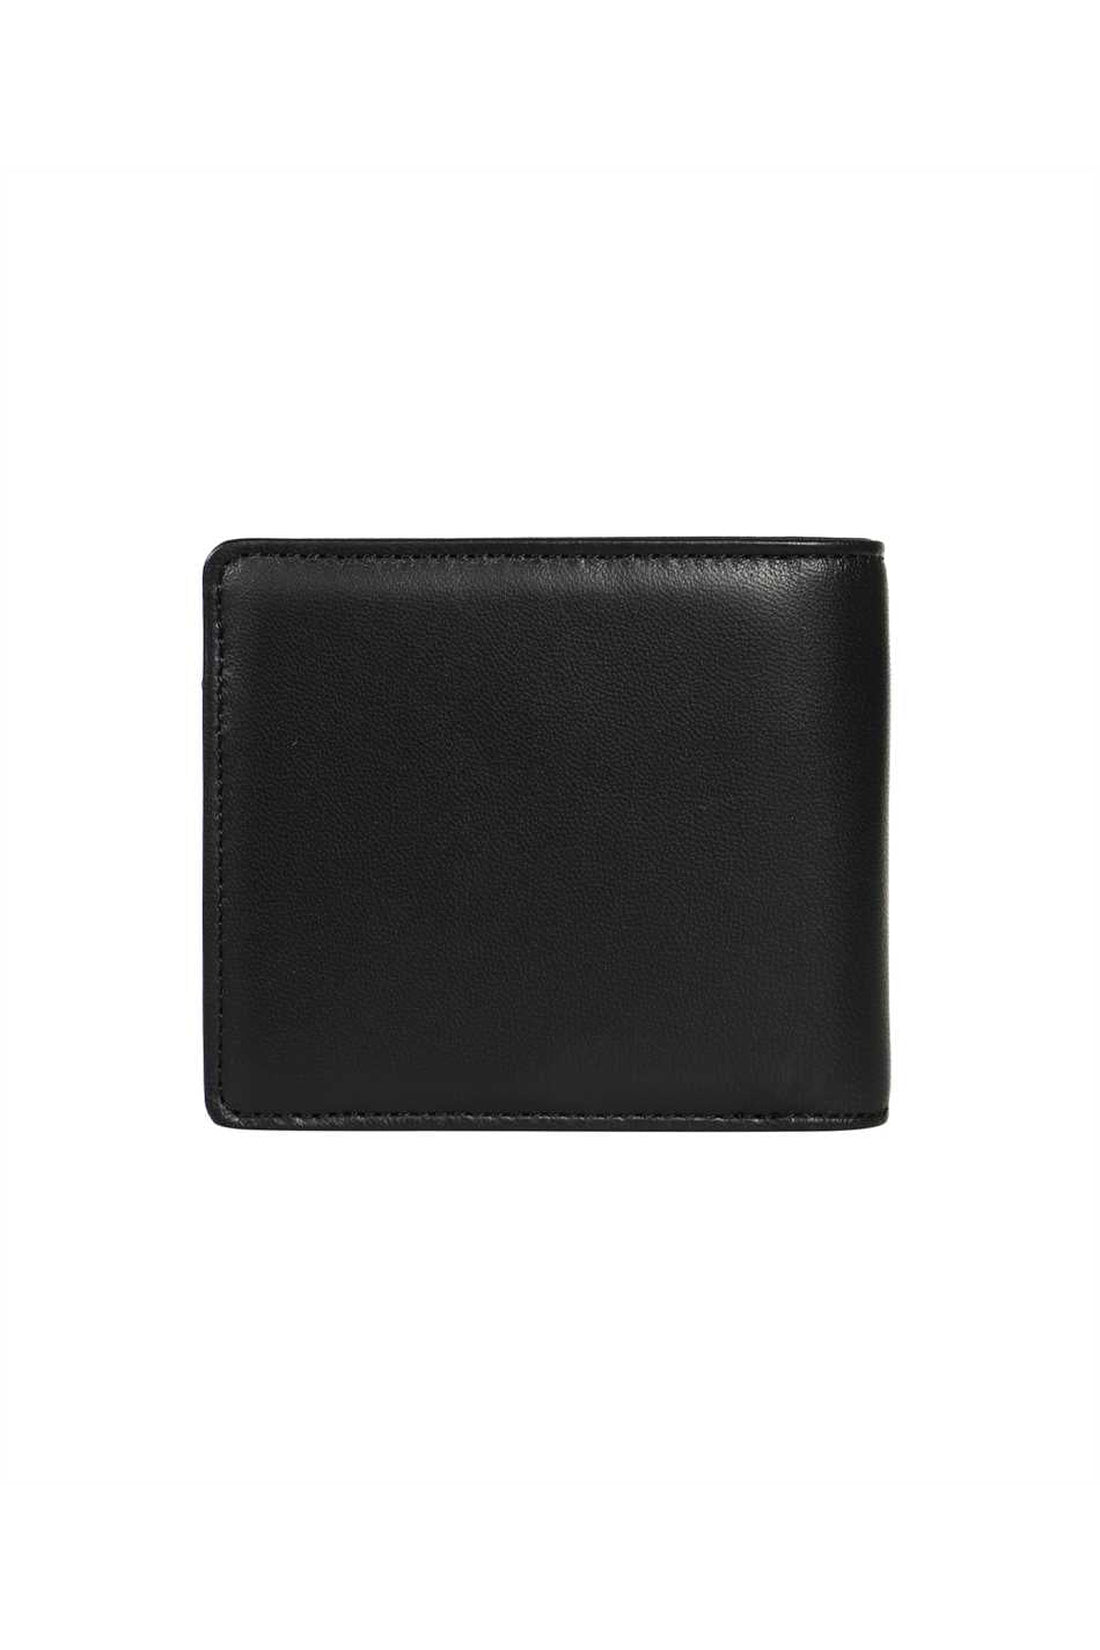 Vivienne Westwood-OUTLET-SALE-Leather wallet-ARCHIVIST